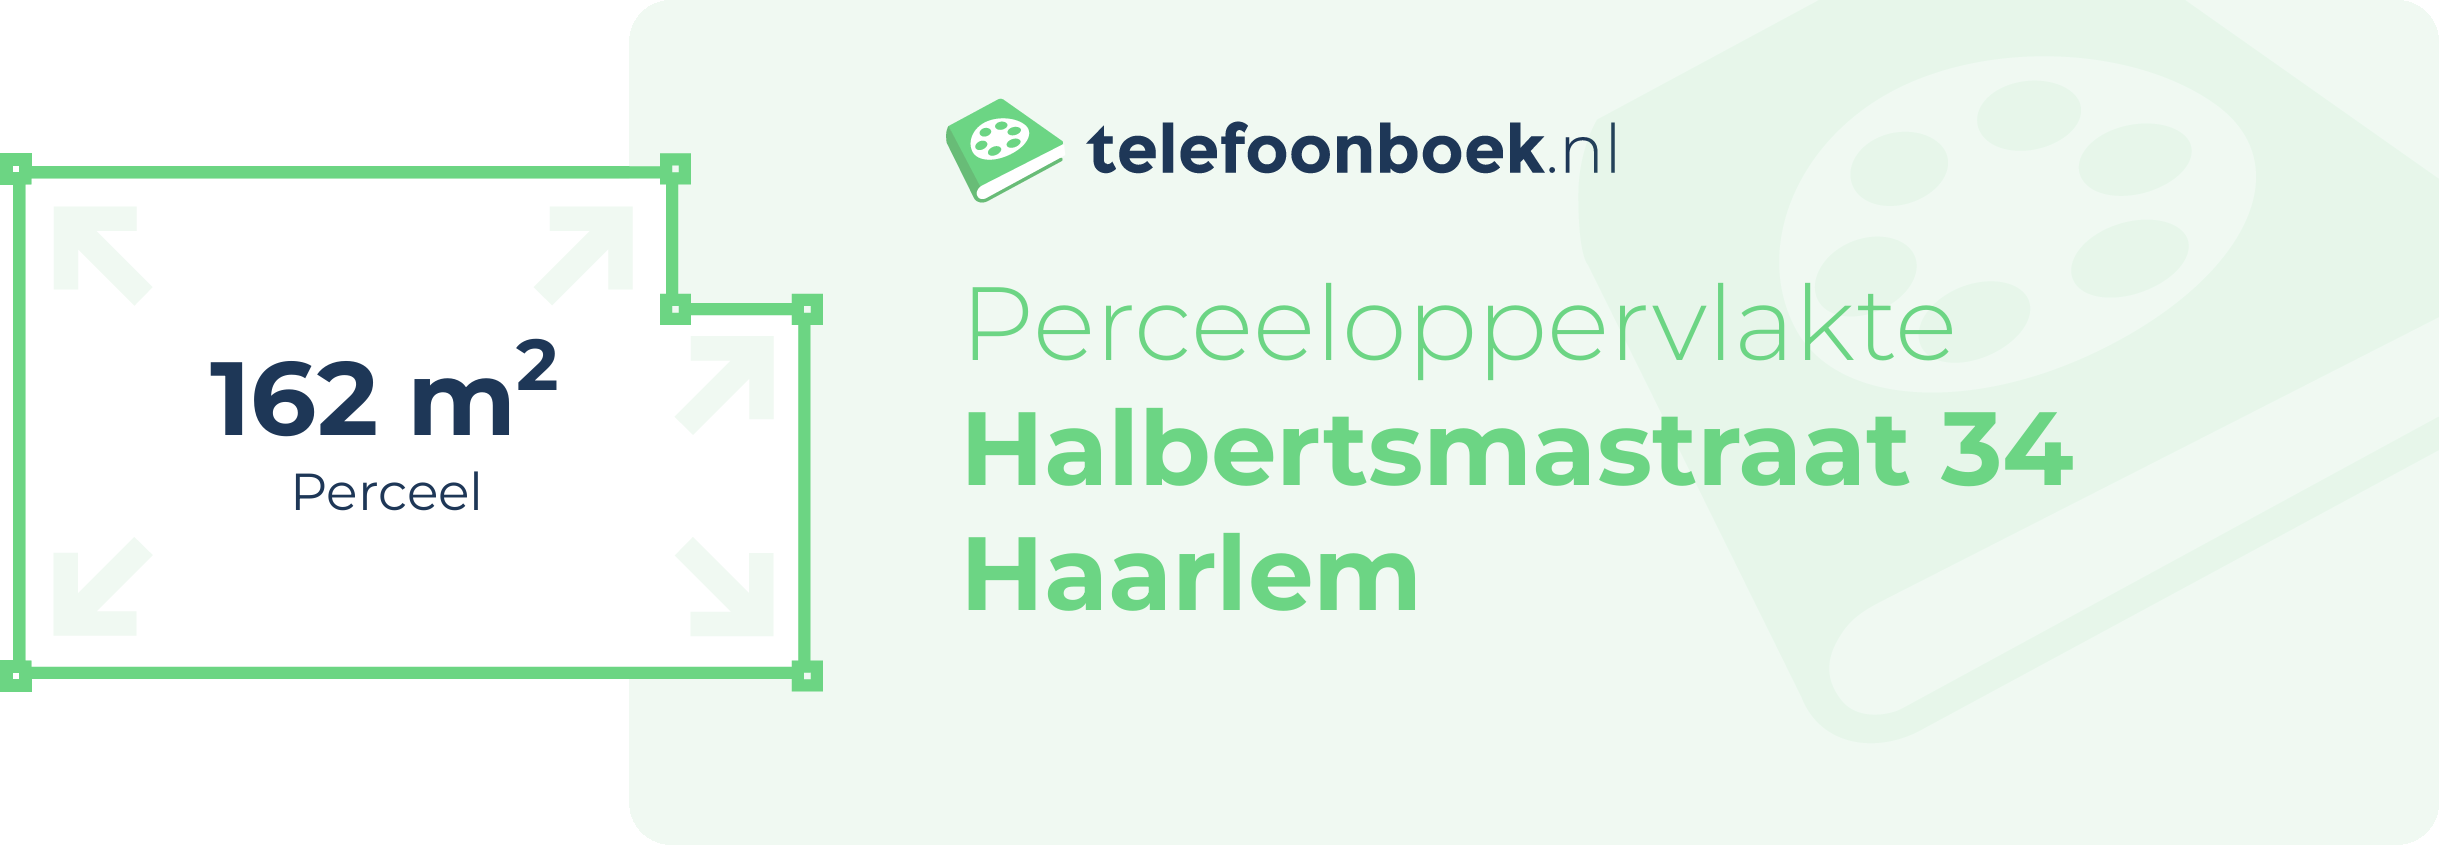 Perceeloppervlakte Halbertsmastraat 34 Haarlem